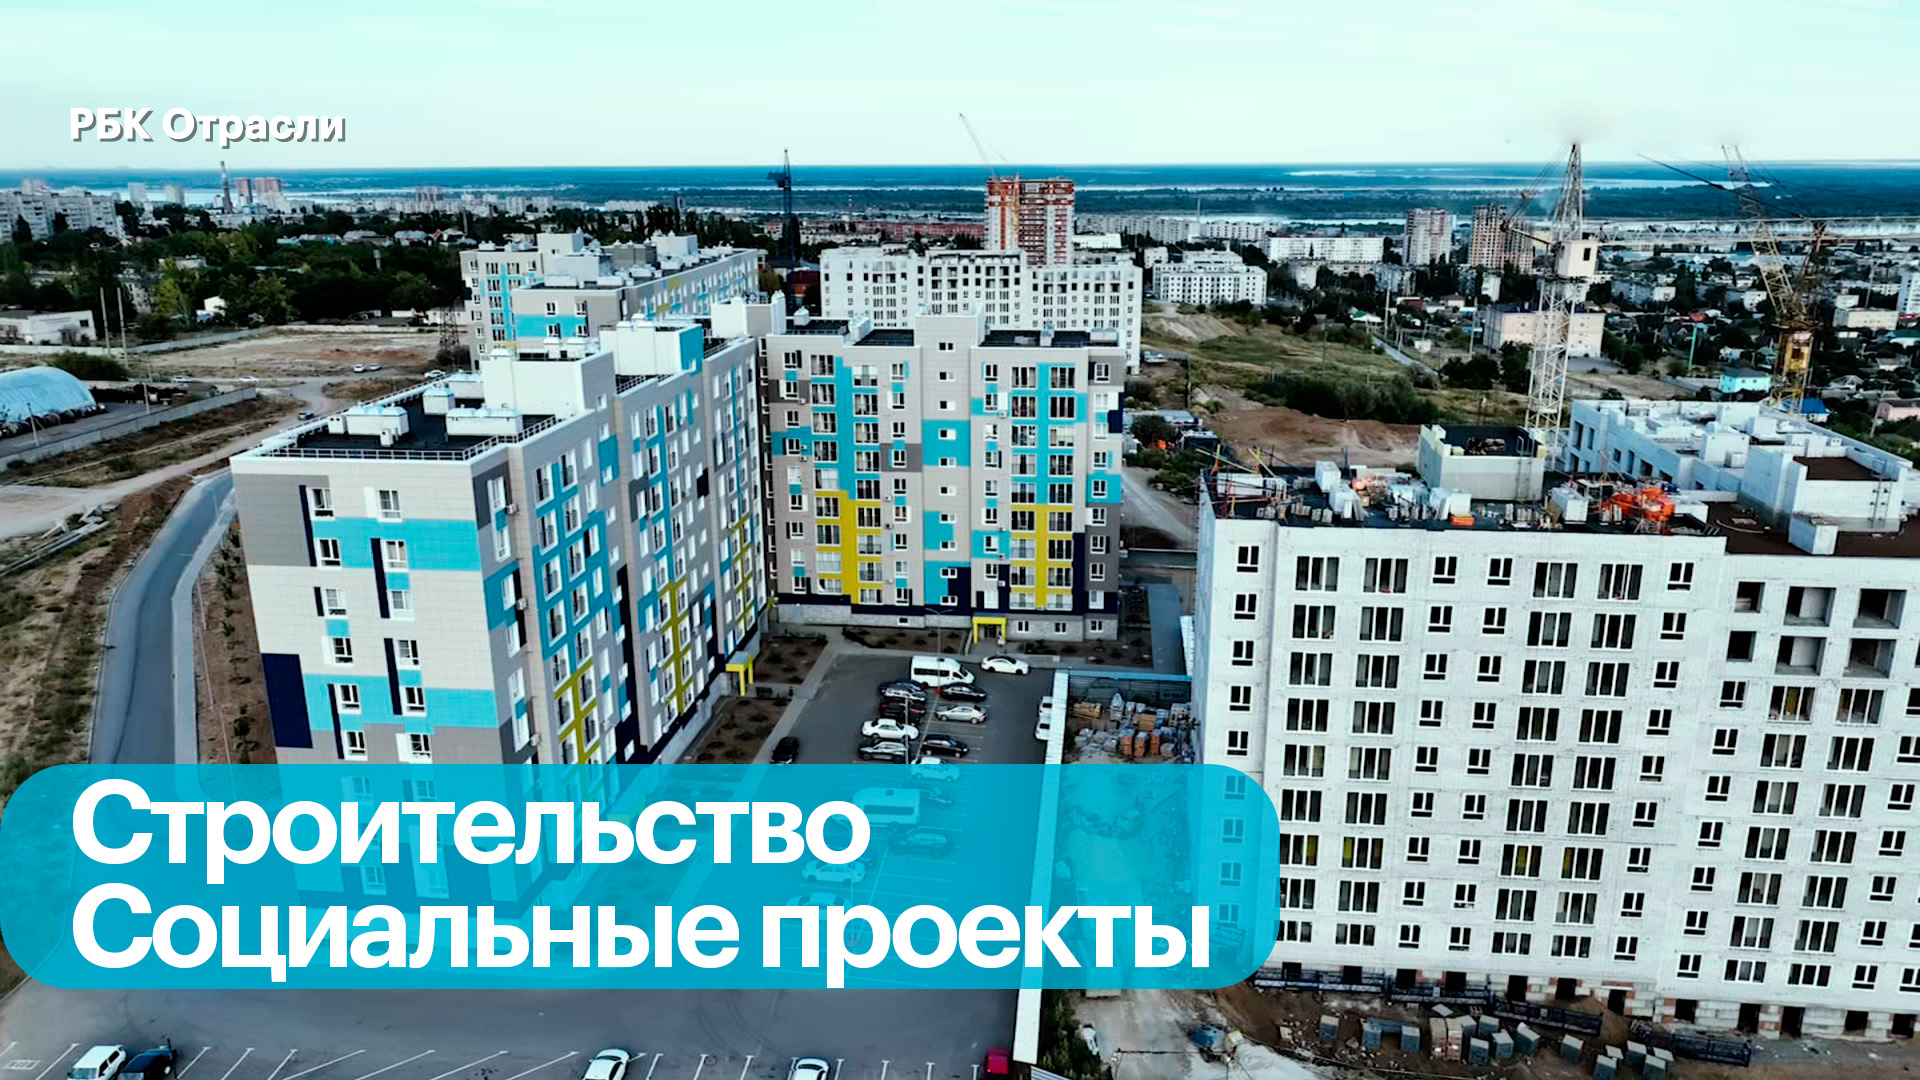 Волгоградская область: драйверы развития